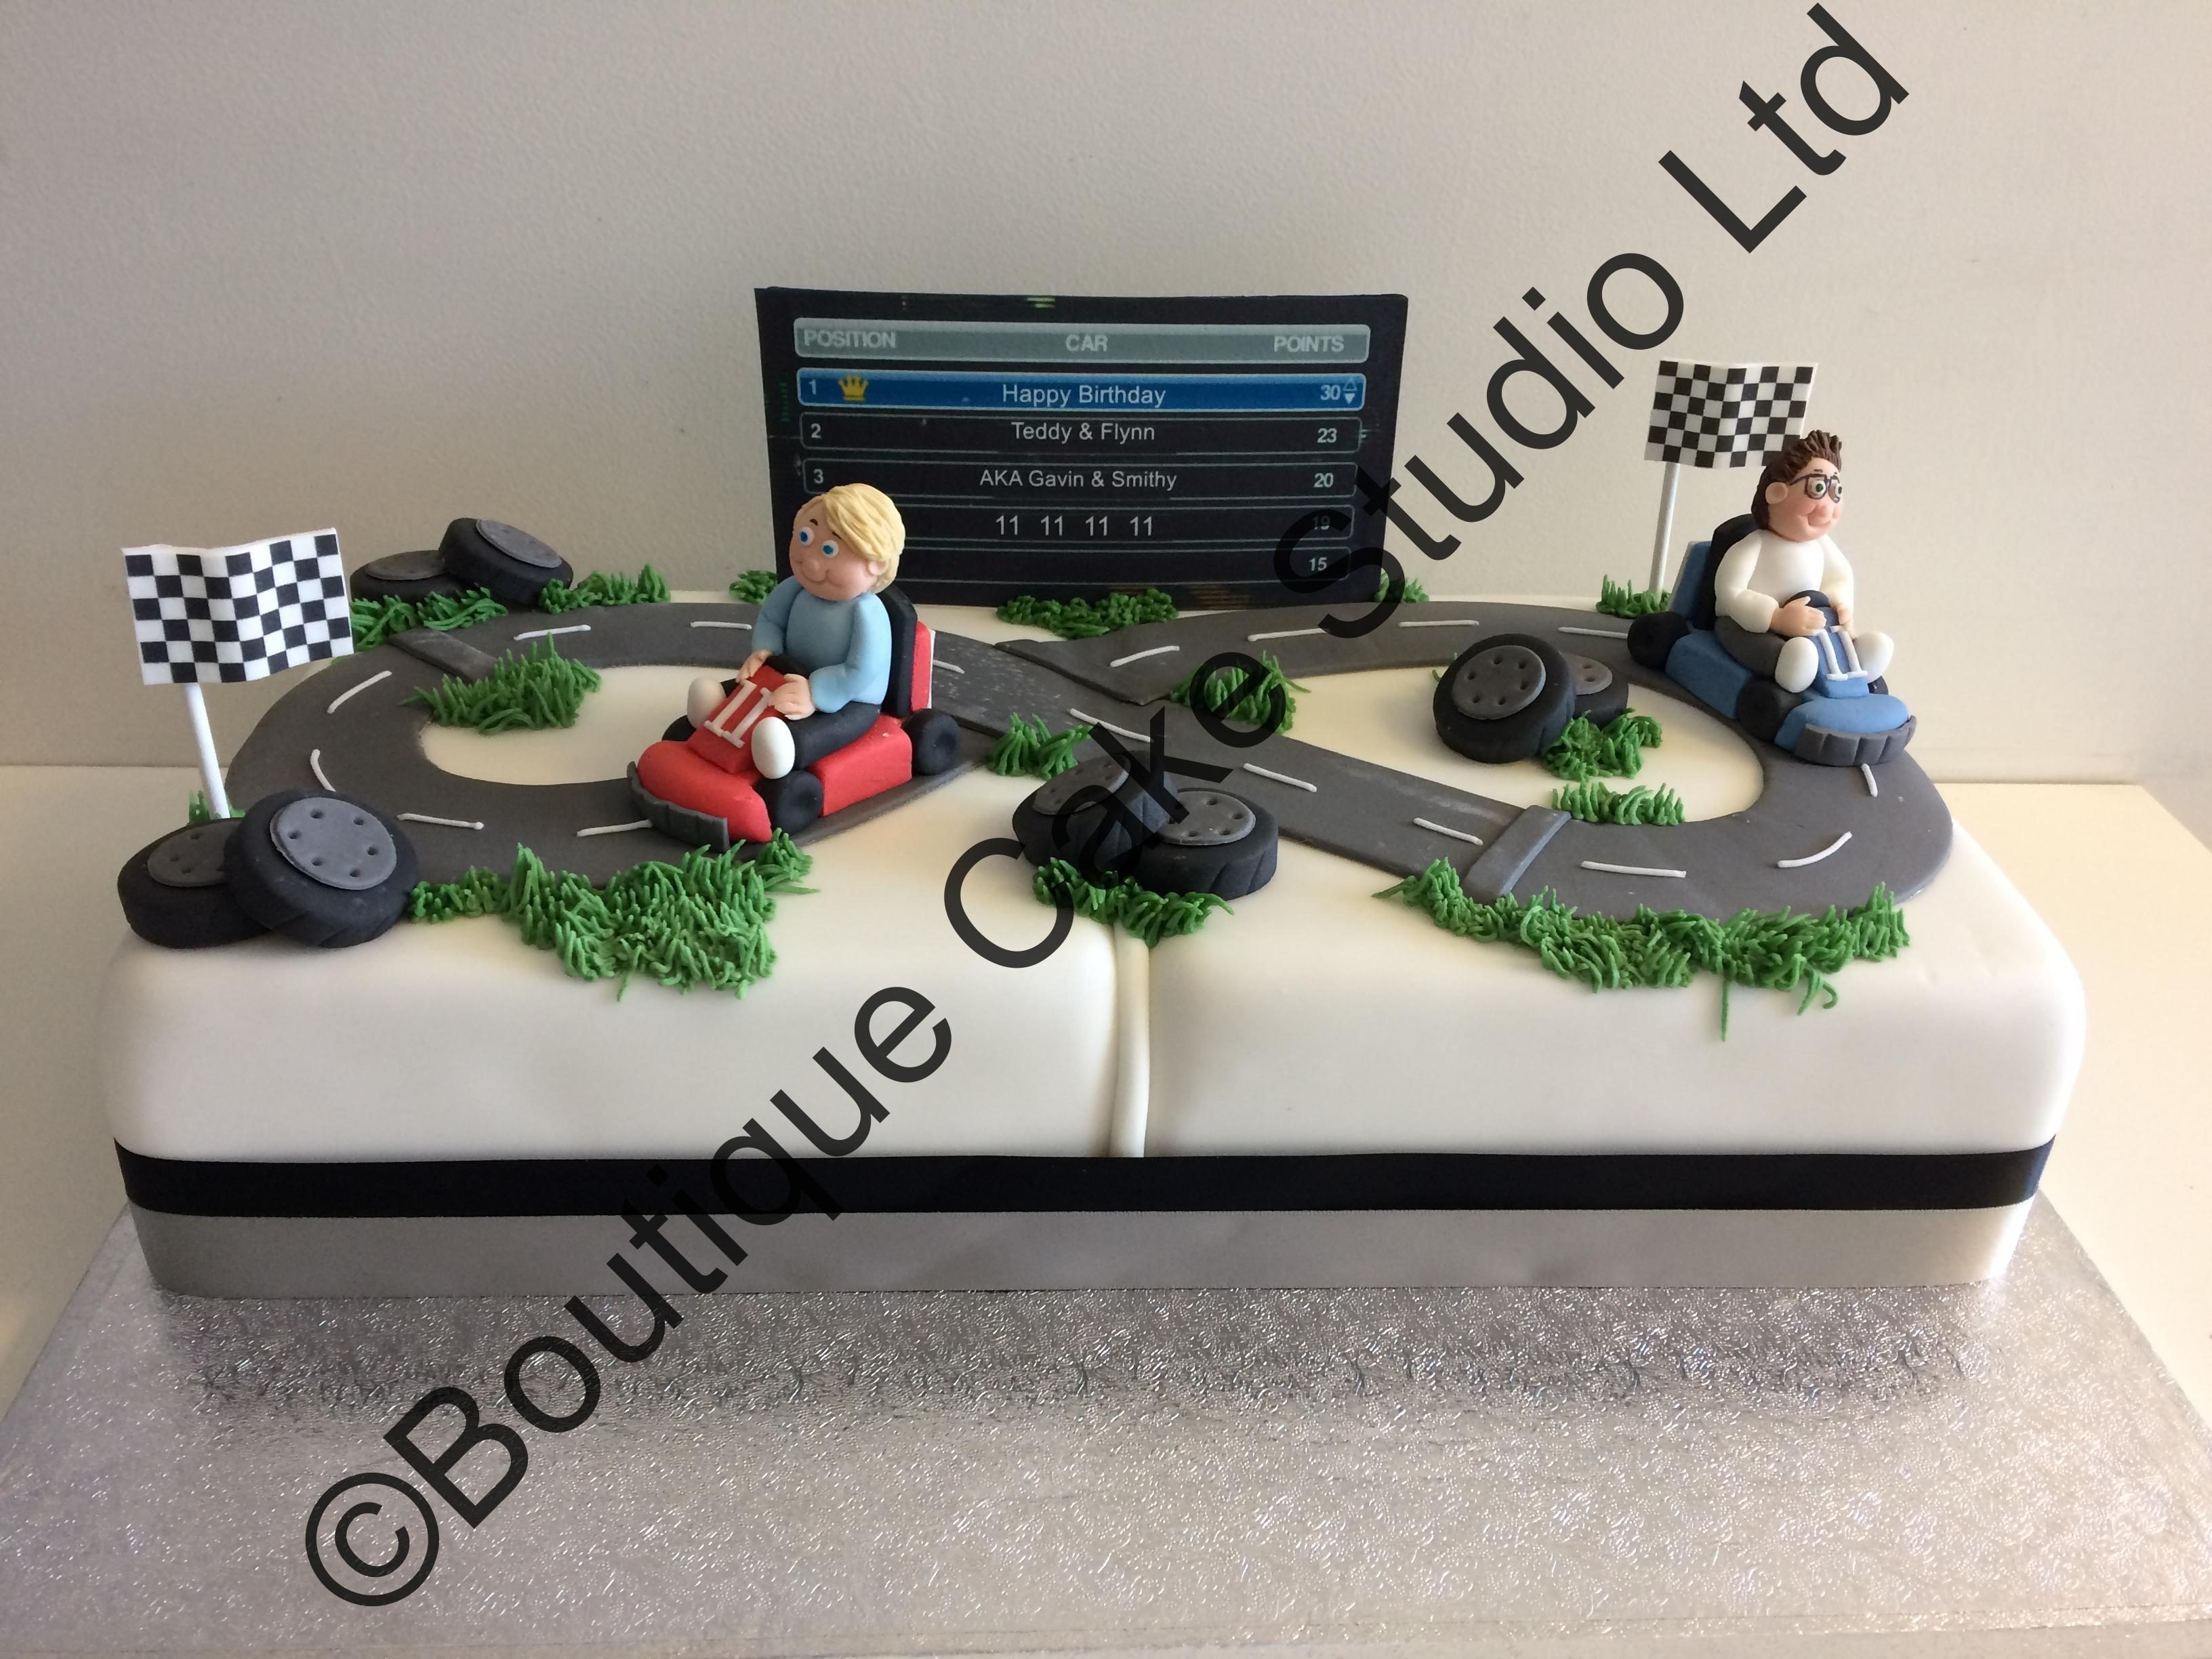 Go-Karting themed cake